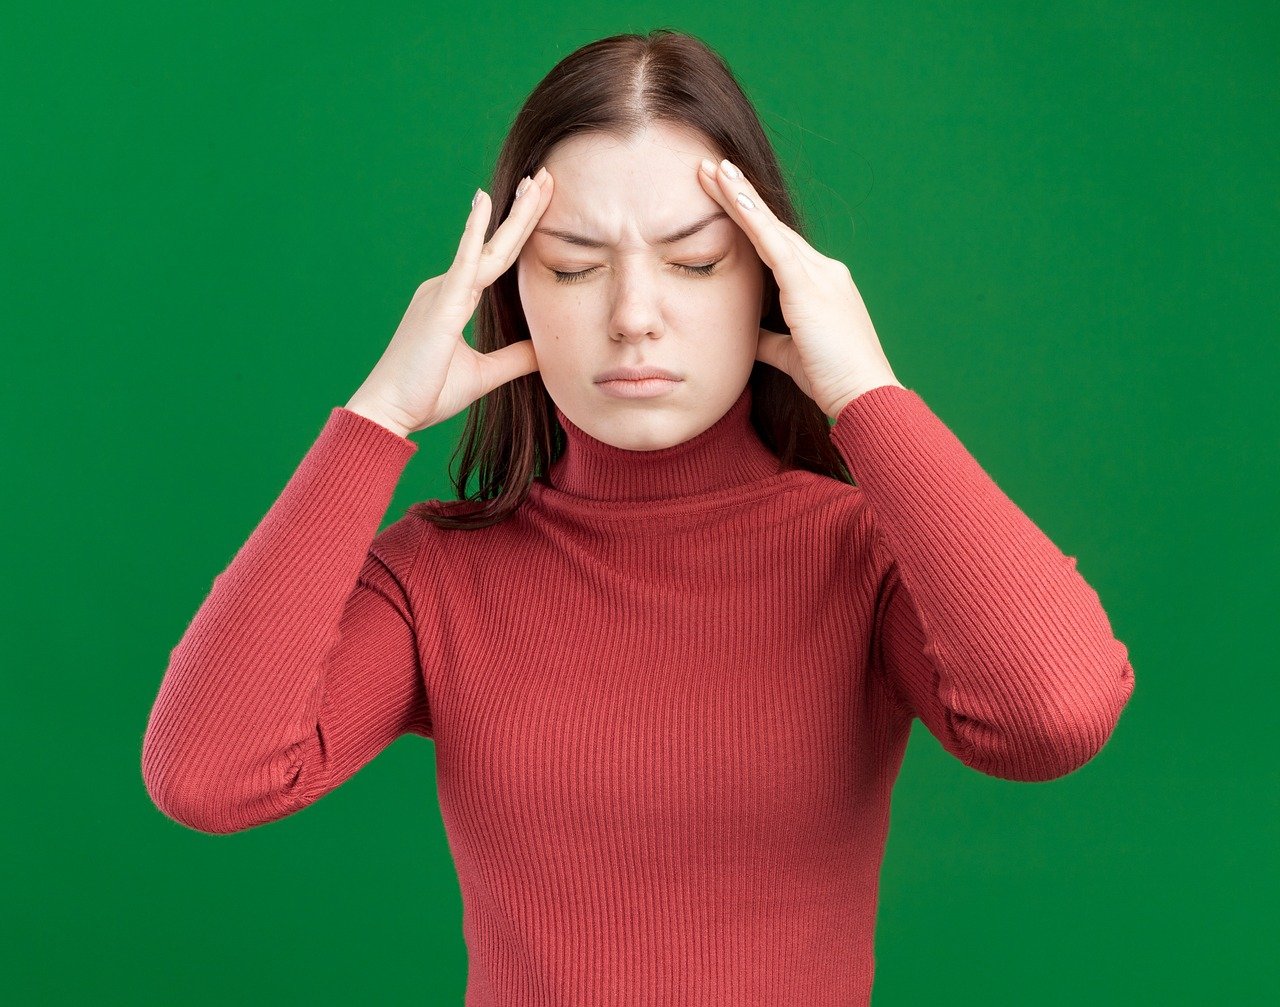 ZNANSTVENICI TVRDE ‘Otkrili smo kako nastaju glavobolje i migrene’